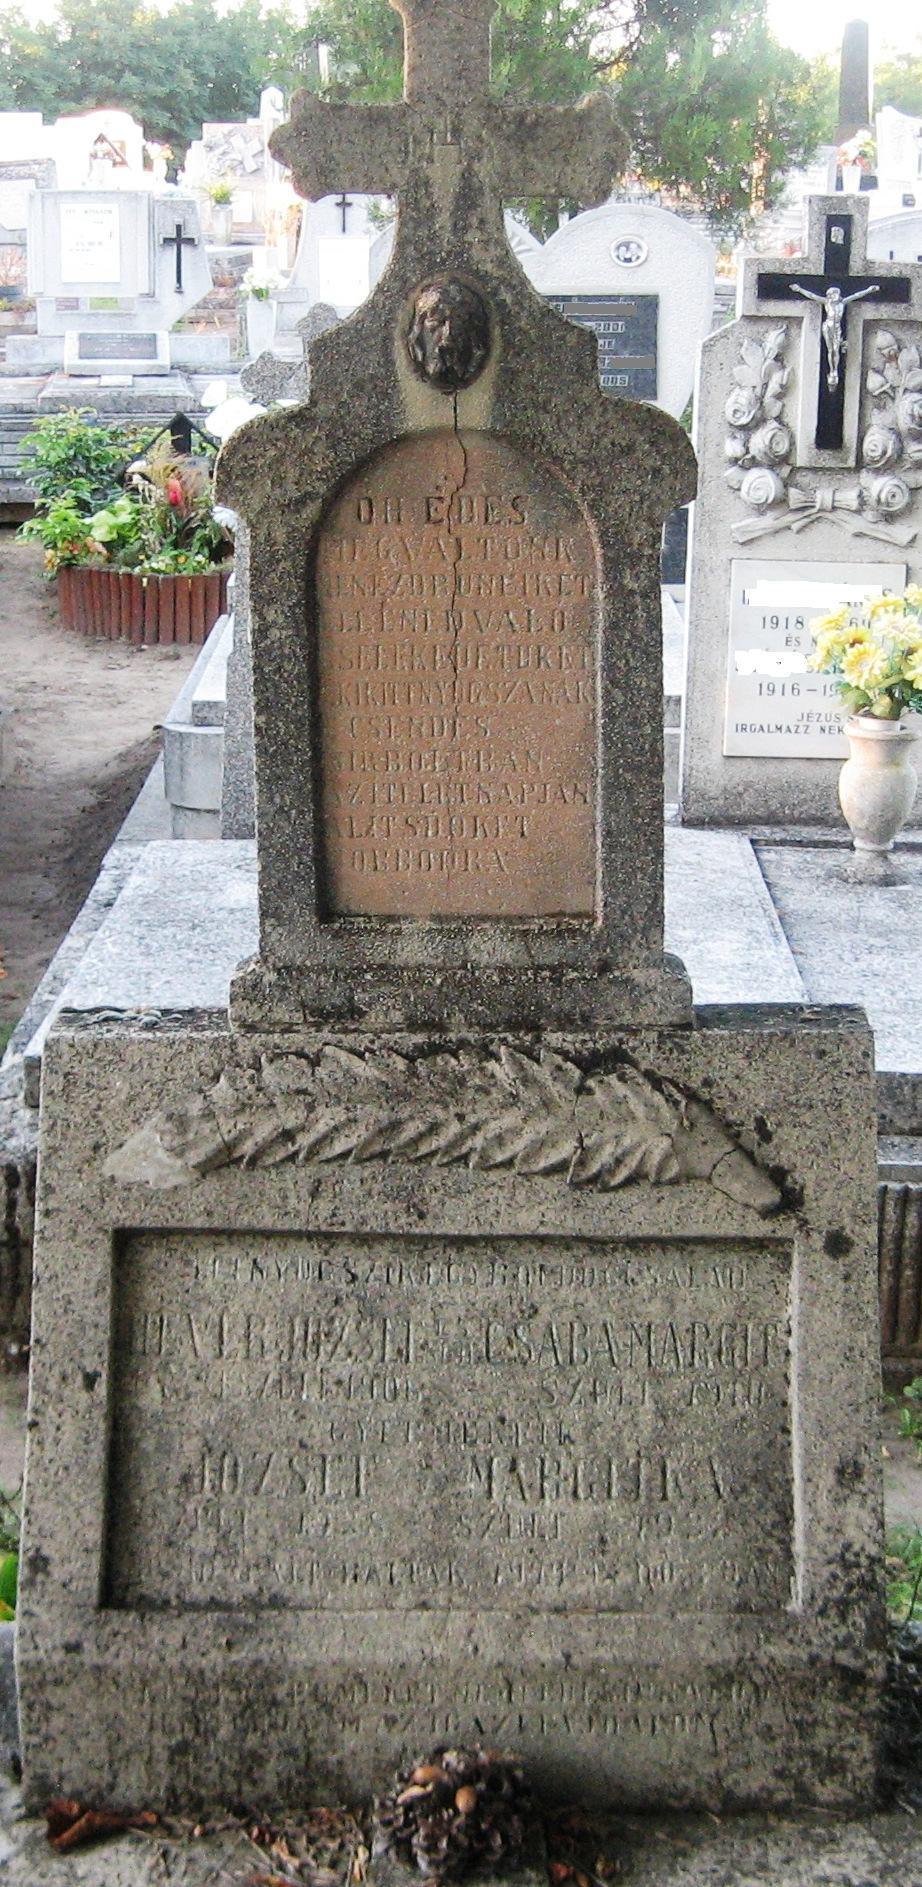 A bombázás során elhunyt Hevér-család sírja az óhatvani temető 2. parcellájában.